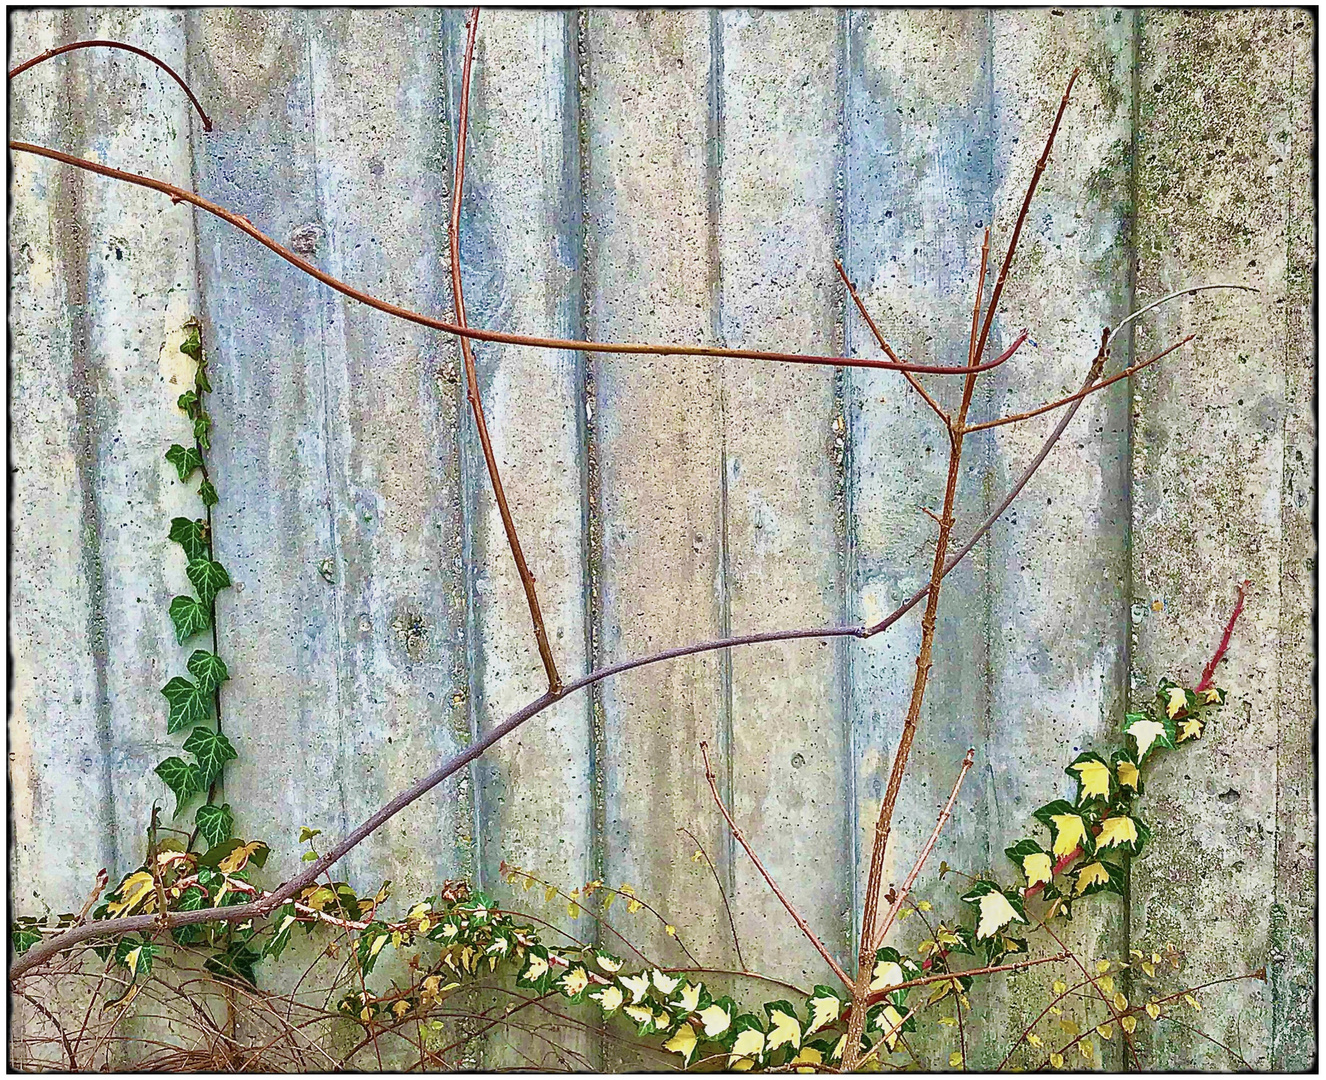 Mittwochsblümchen- The wall